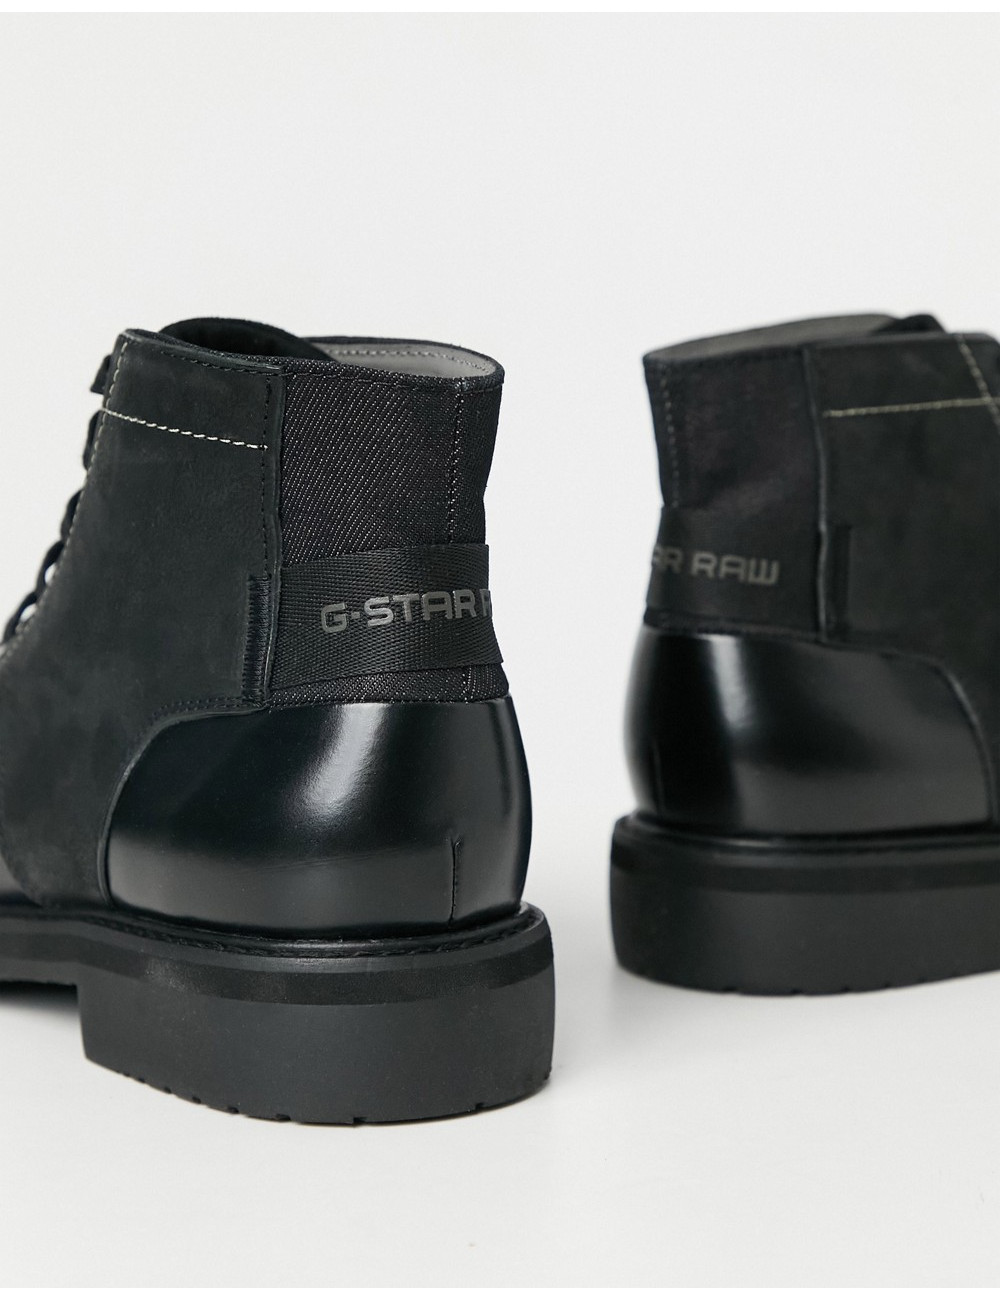 G-Star garber derby boots